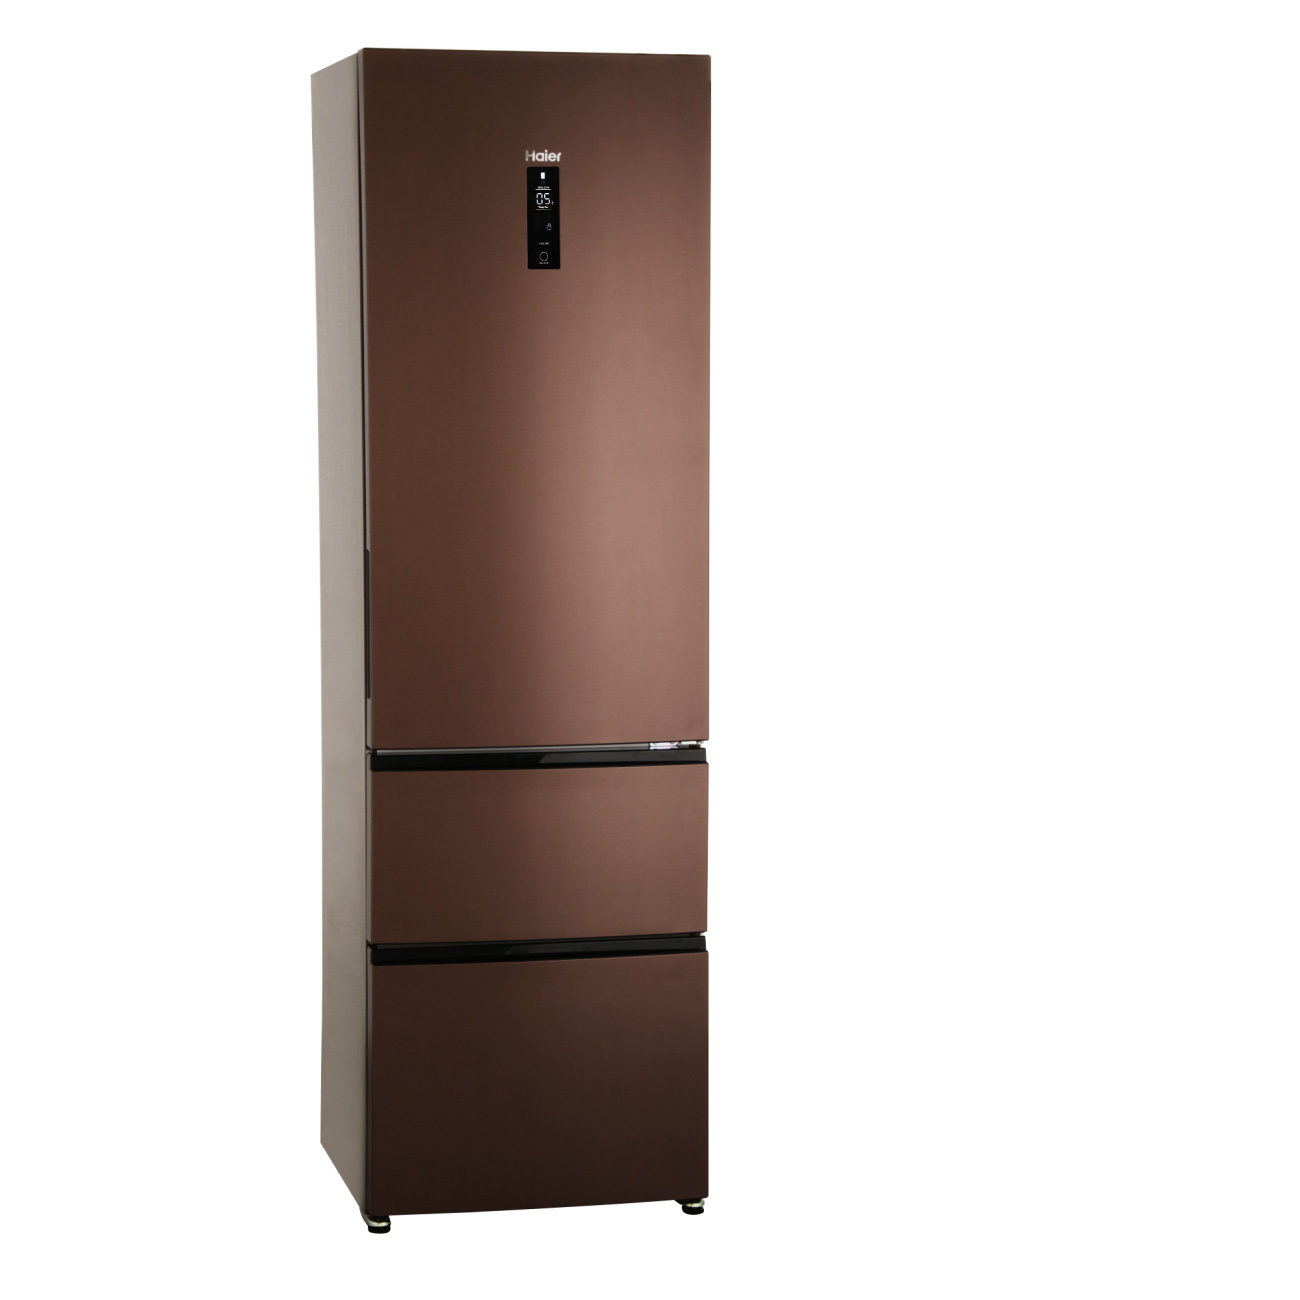 Холодильник Haier A2F737CLBG - отзывы покупателей, владельцев в .